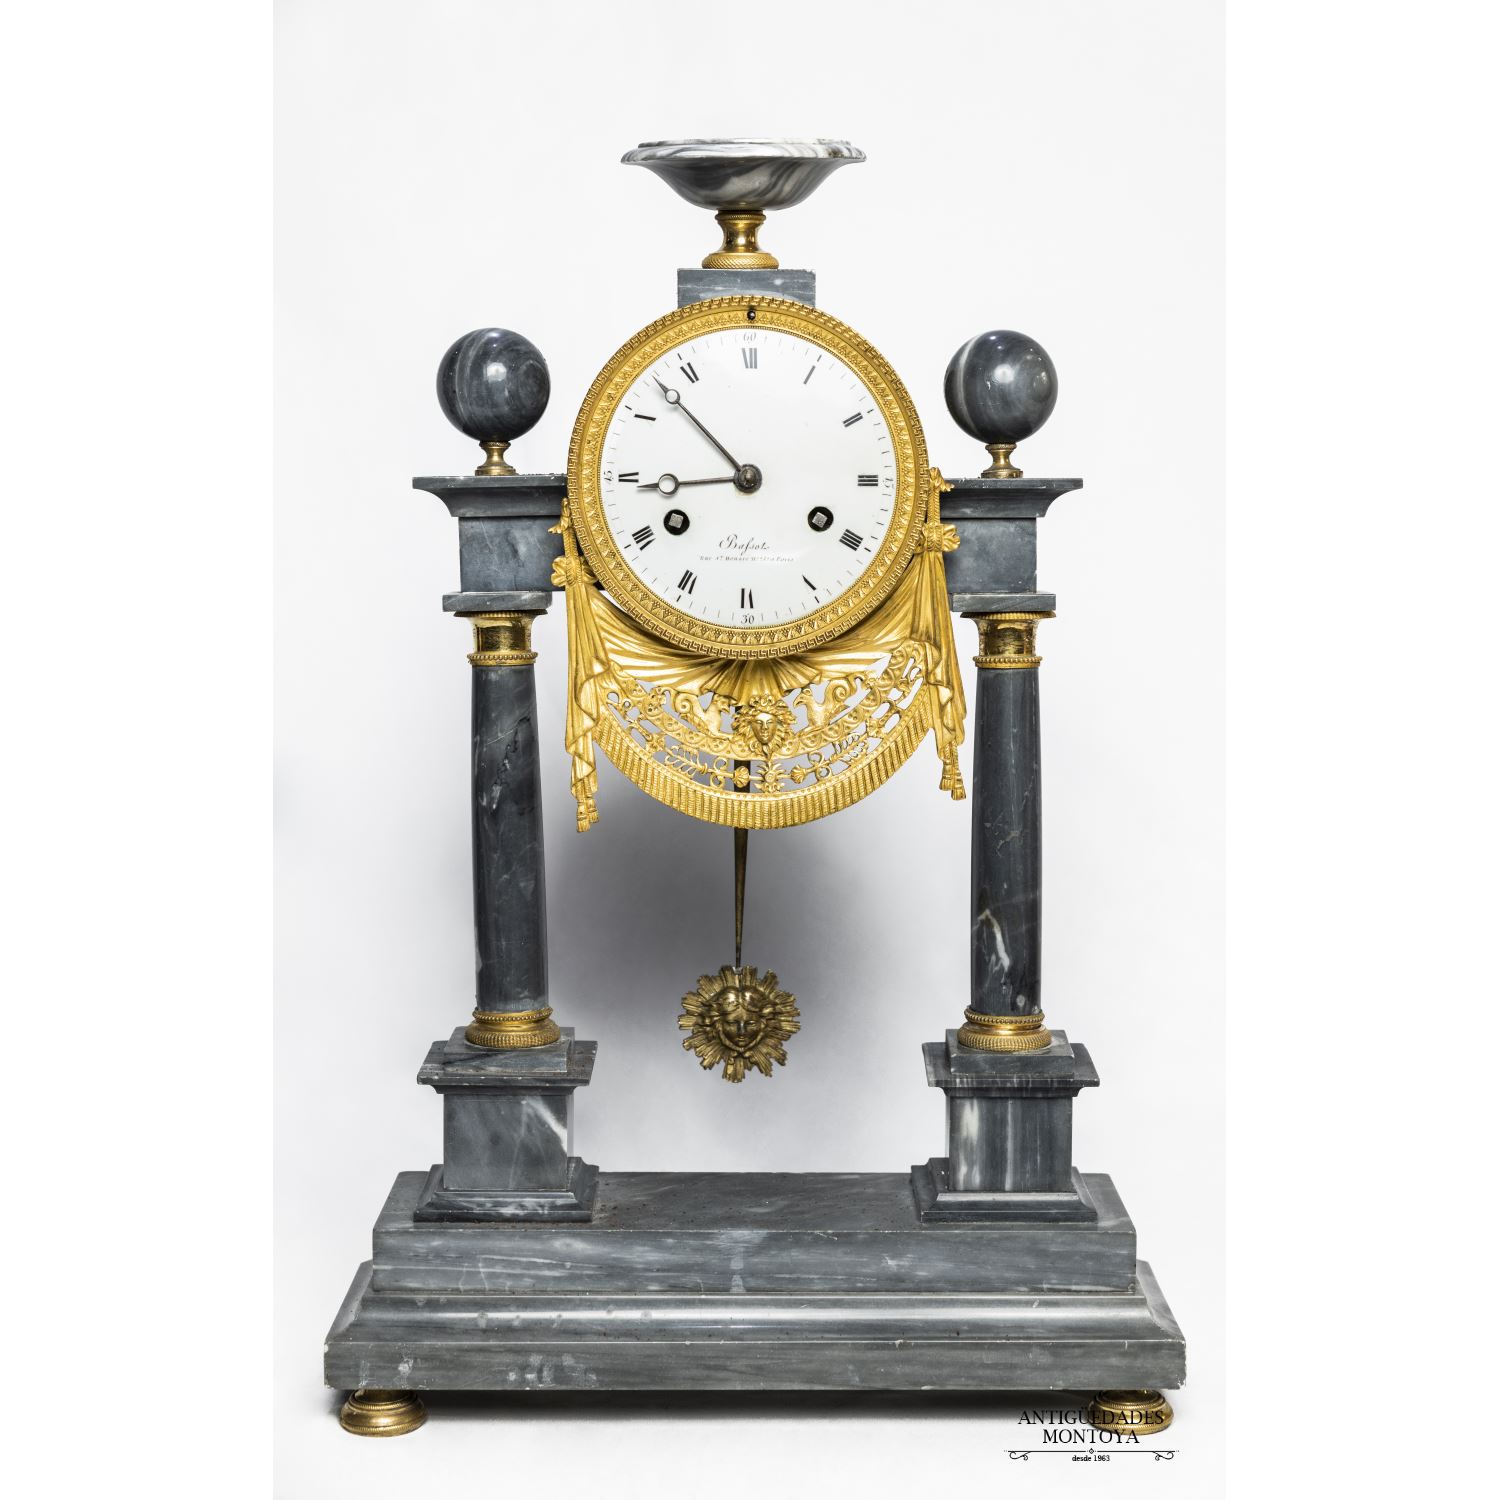 Portico clock 19th century